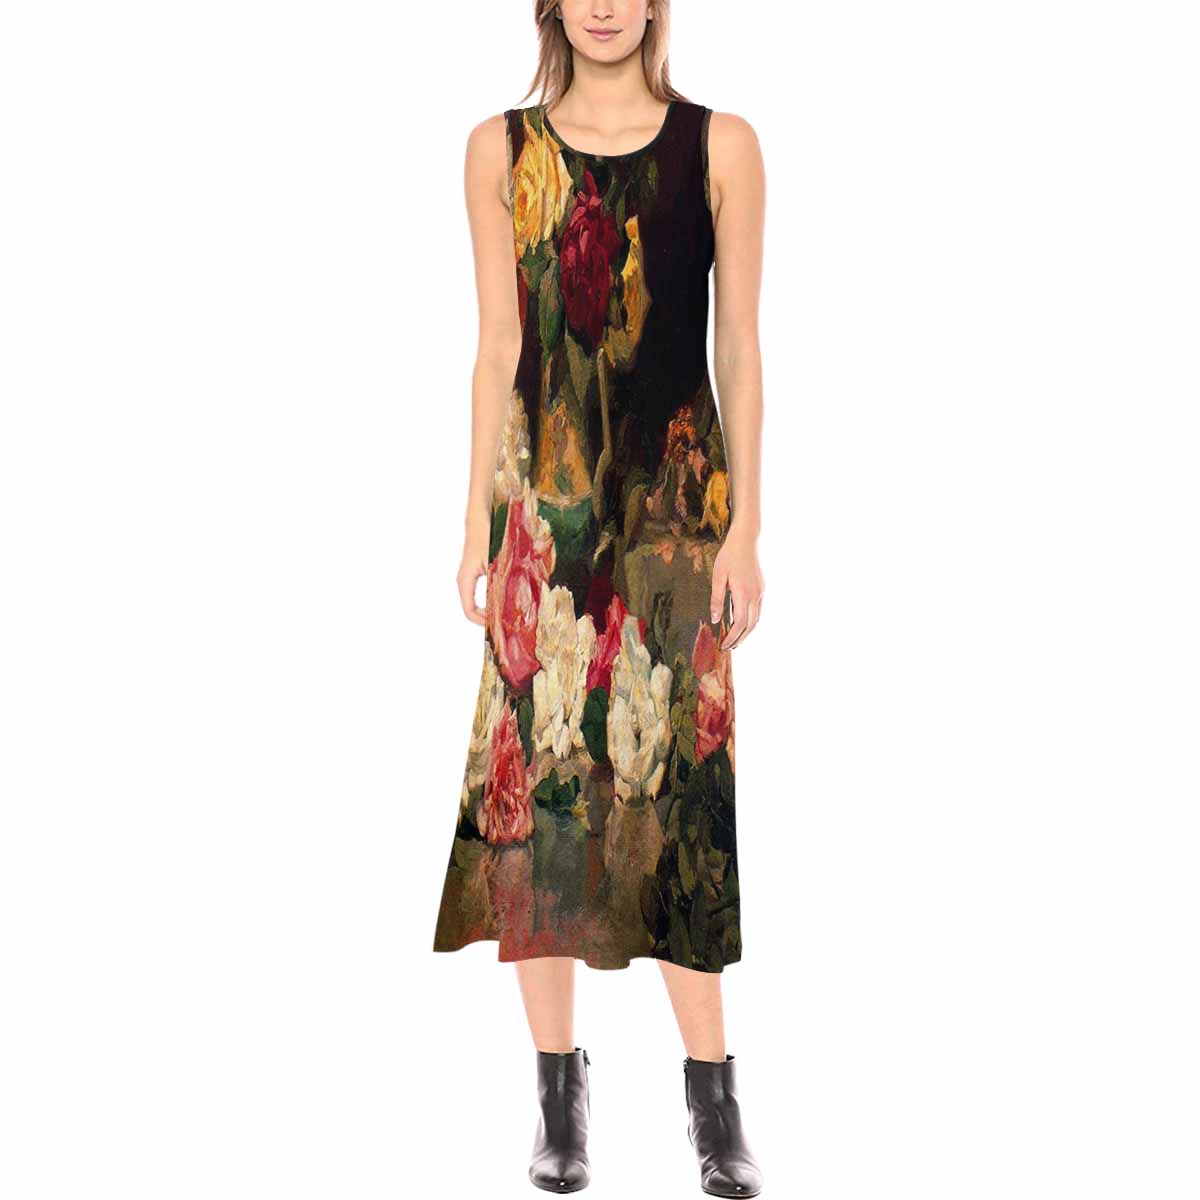 Vintage floral long dress, model D09538 Design 37